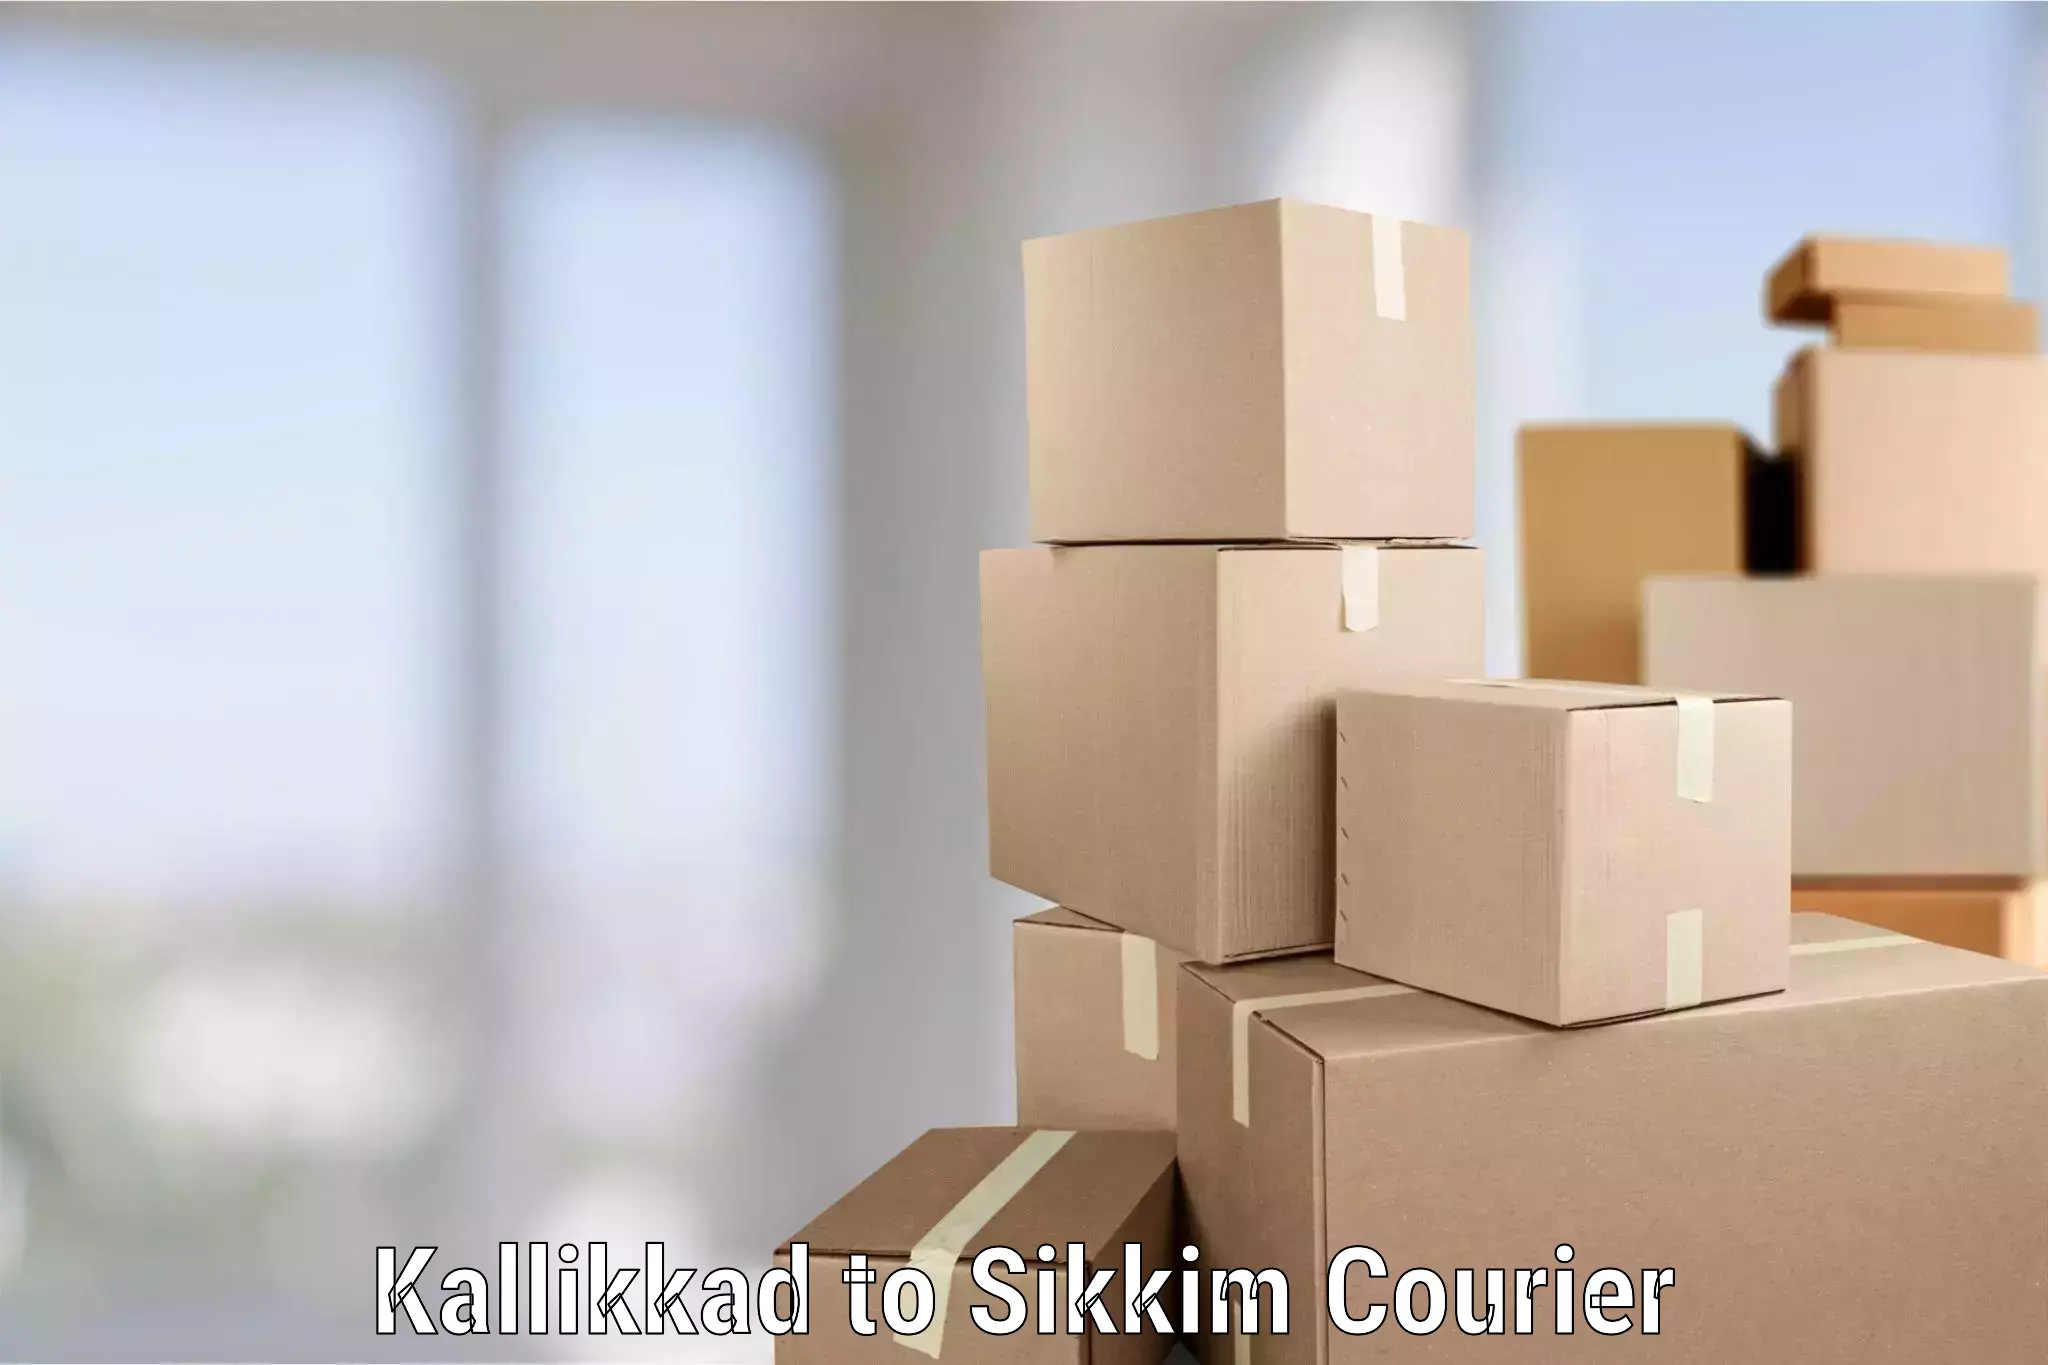 Furniture moving service Kallikkad to Mangan